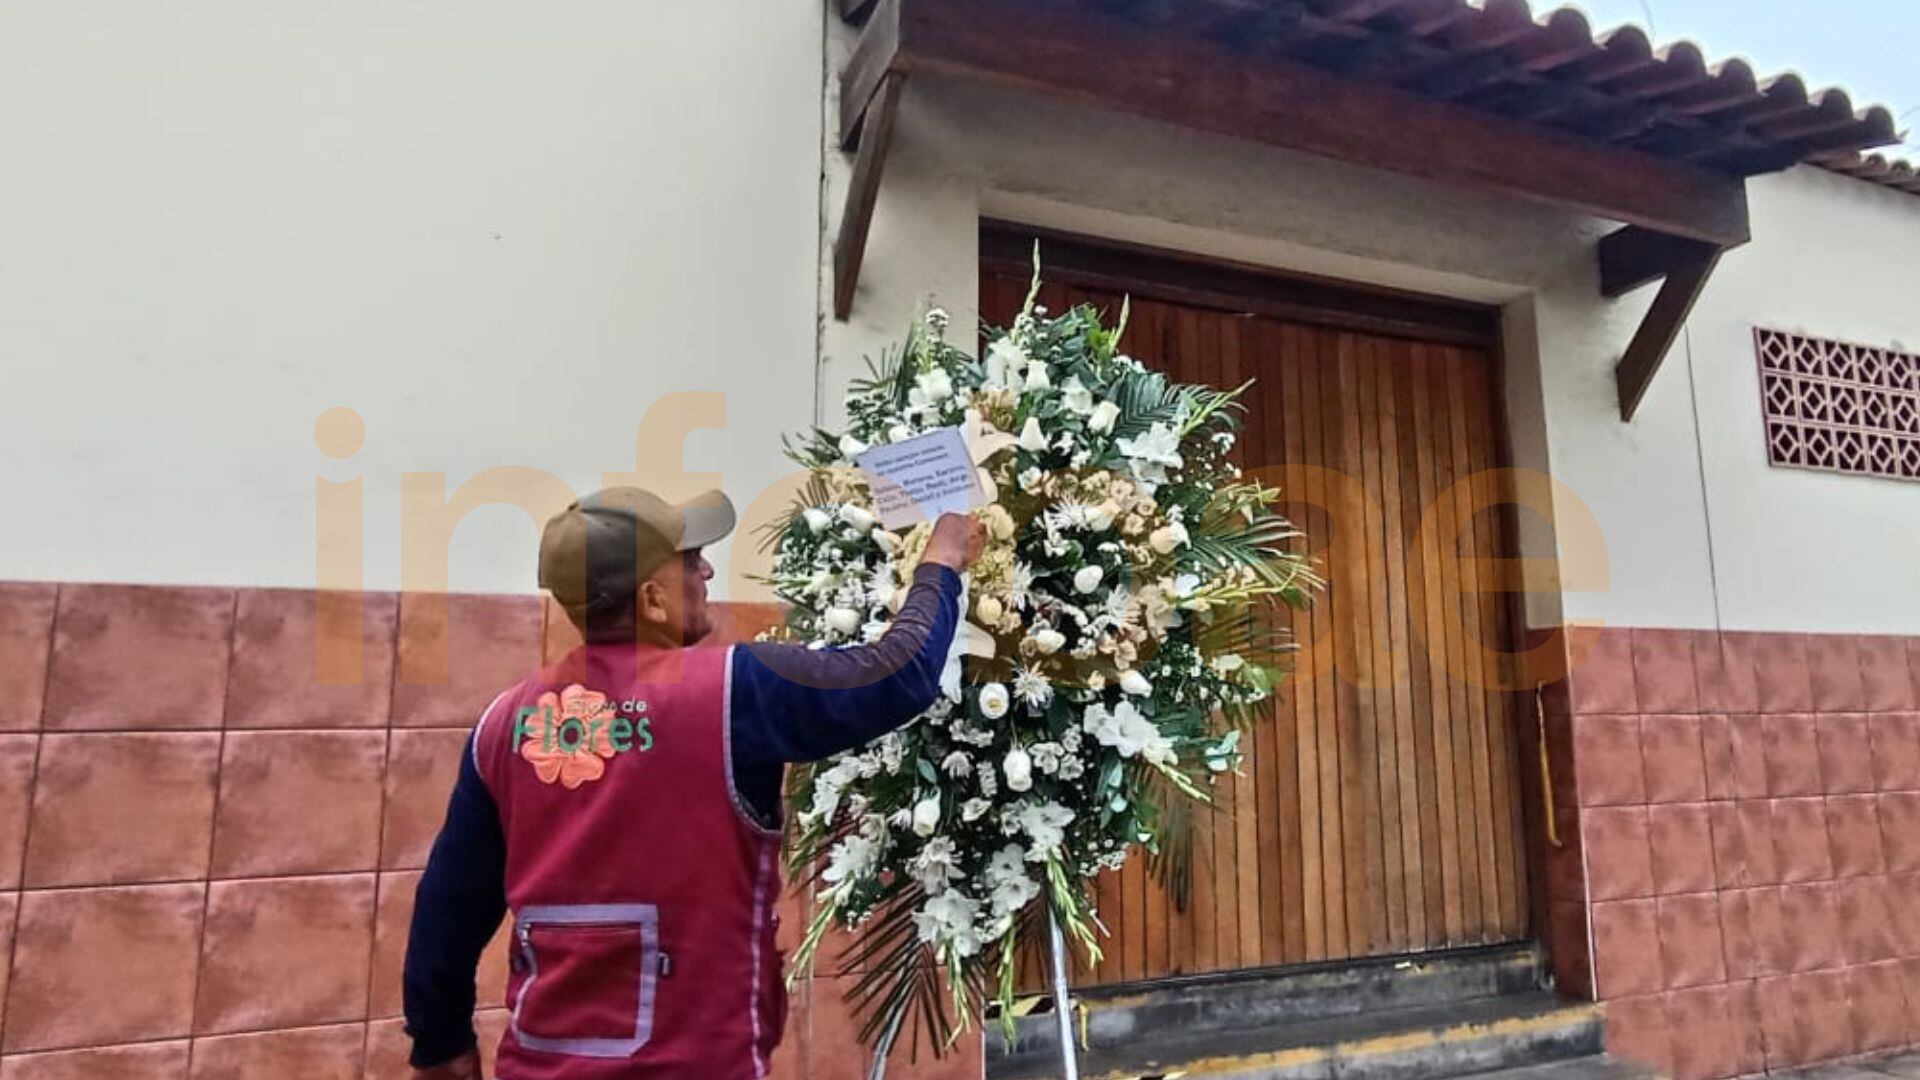 Llegan los primeros arreglos florales al Velorio de Pedro Suárez Vértiz en el velatorio de la iglesia Vírgen de Fátima de Miraflores | Infobae / Paula Elizalde